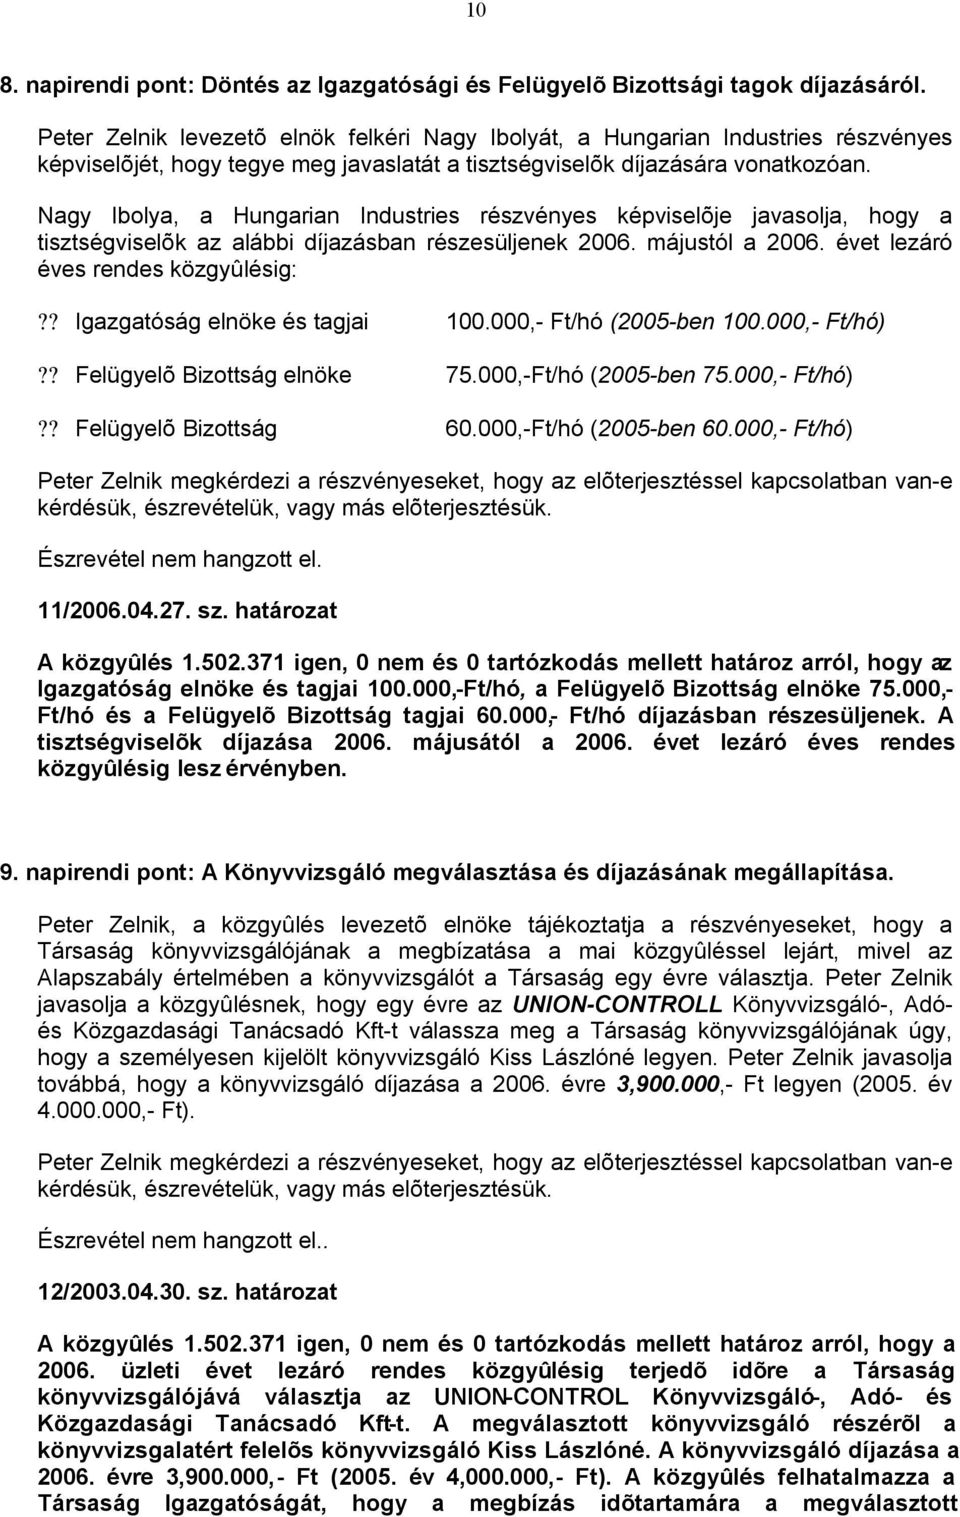 Nagy Ibolya, a Hungarian Industries részvényes képviselõje javasolja, hogy a tisztségviselõk az alábbi díjazásban részesüljenek 2006. májustól a 2006. évet lezáró éves rendes közgyûlésig:?